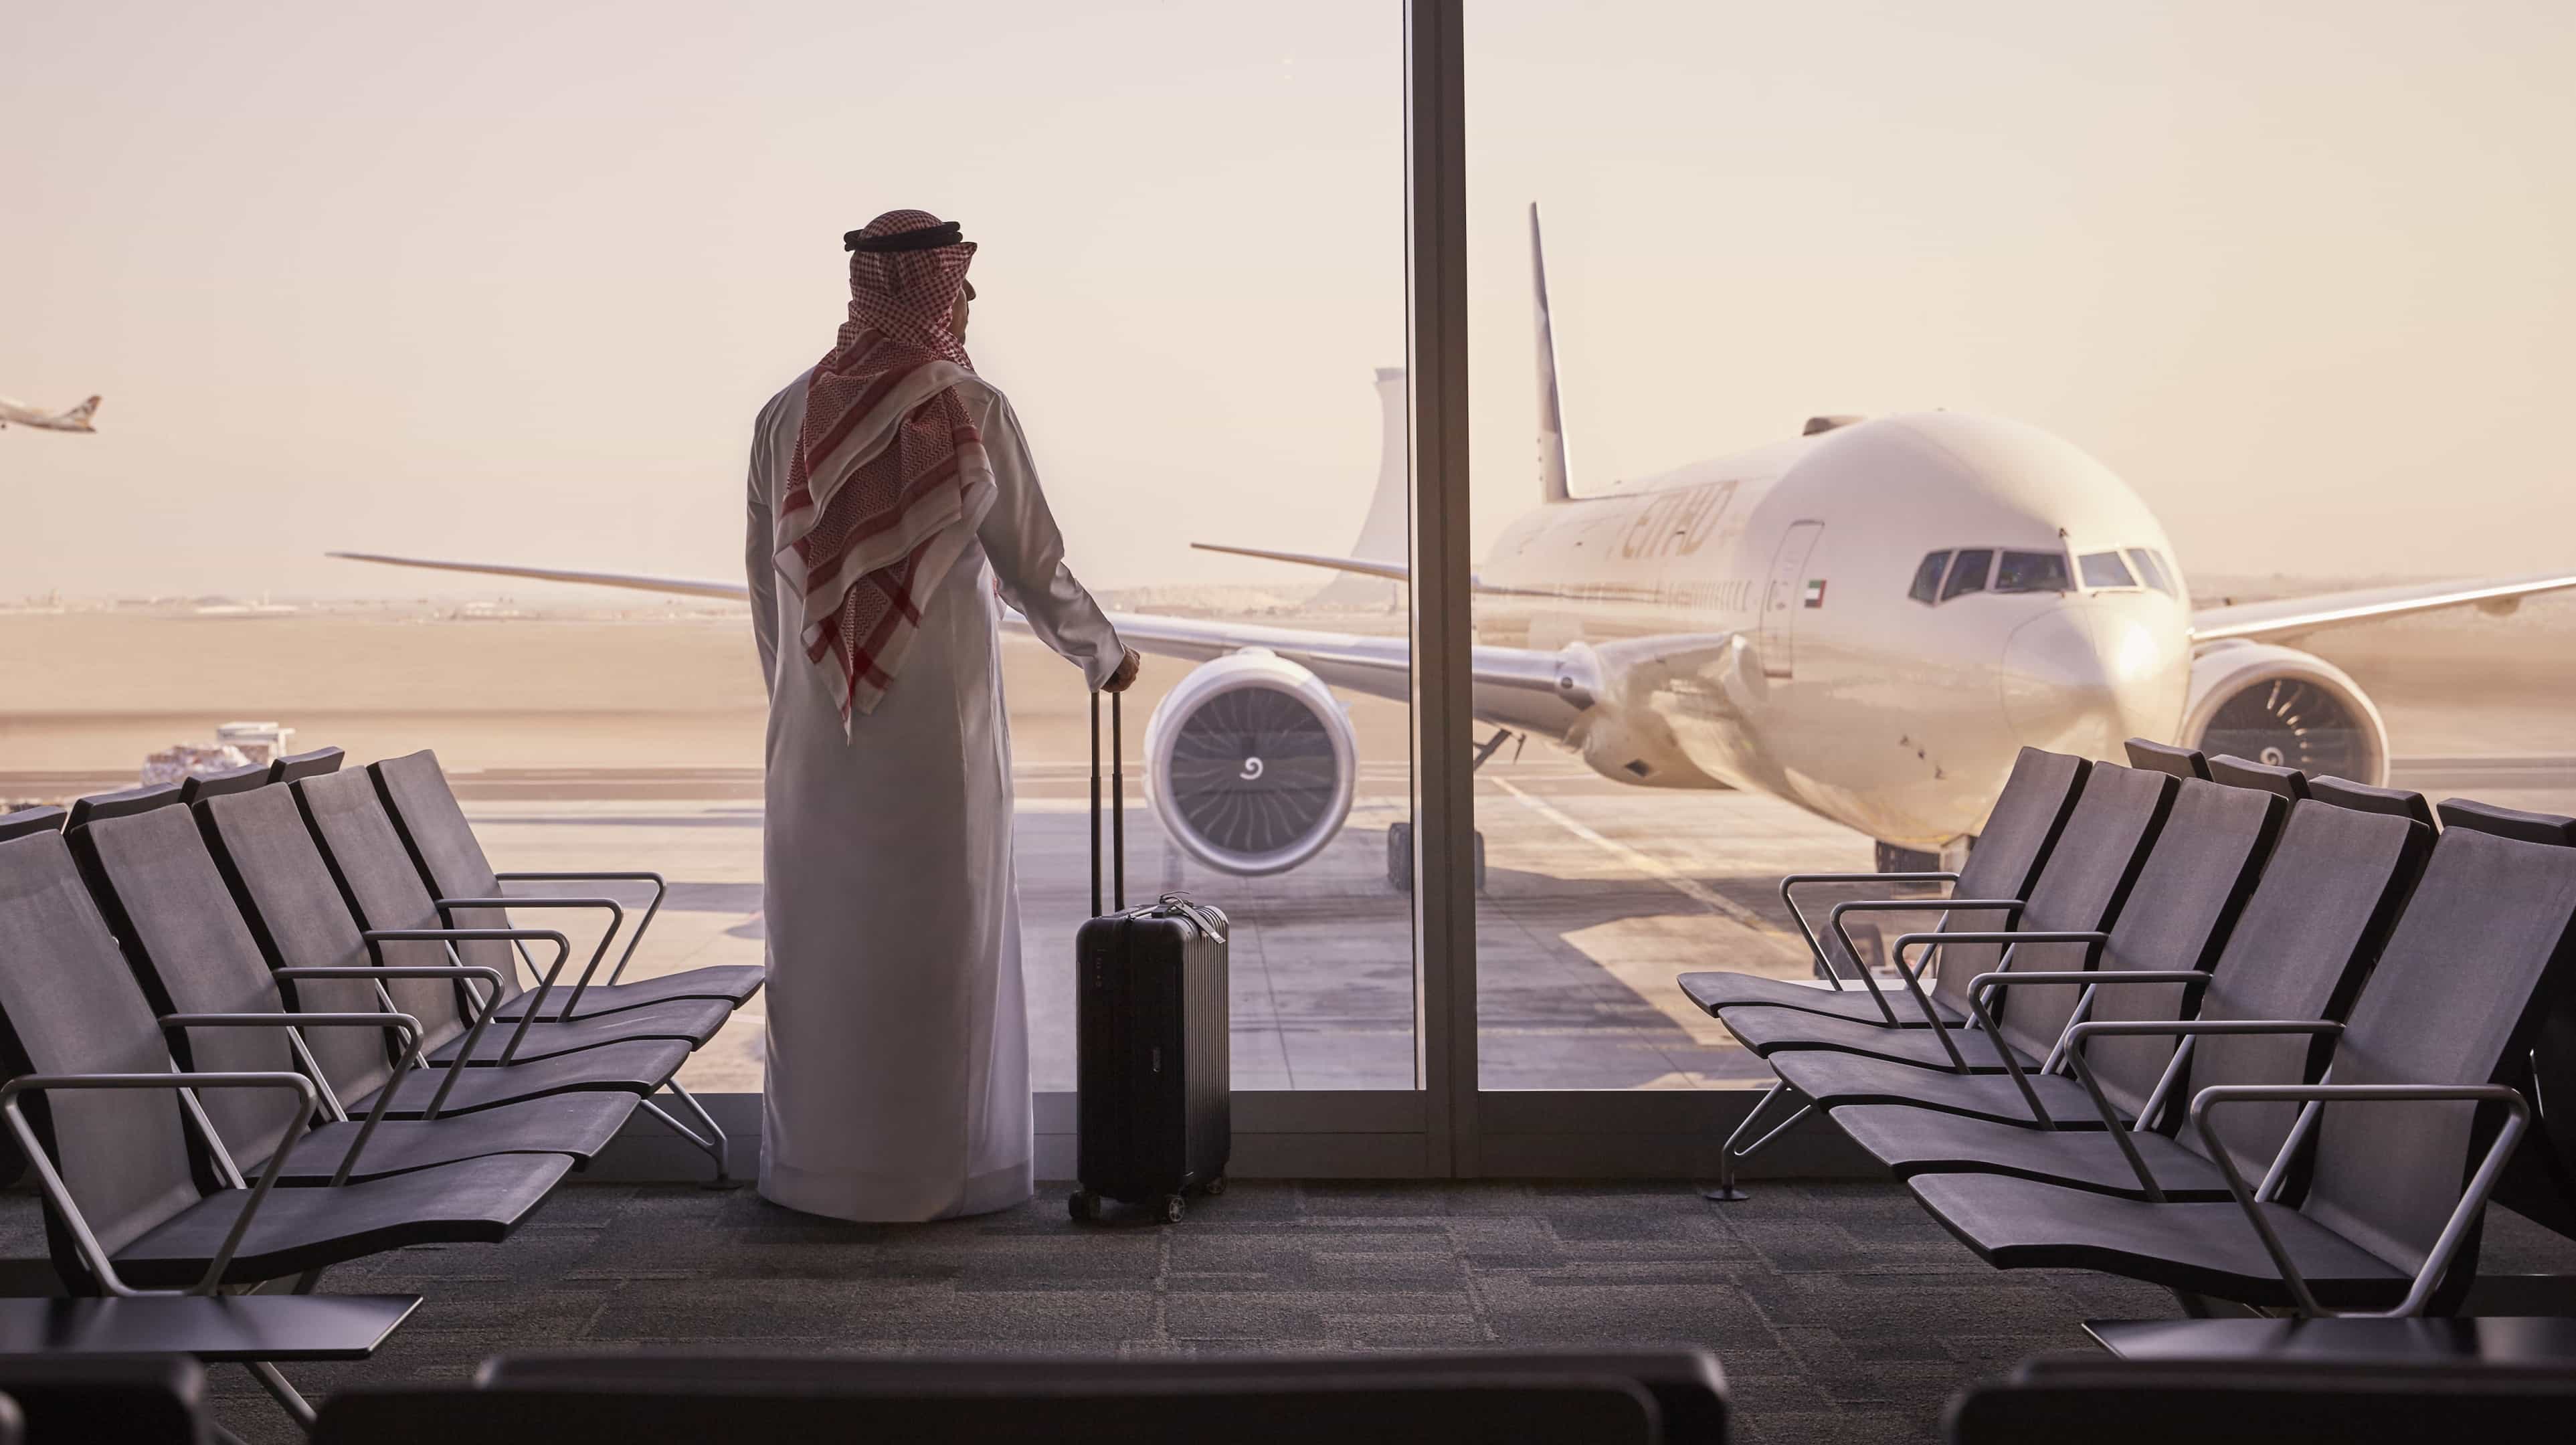 Un uomo in abiti arabi aspetta in un aeroporto. Guarda attraverso il finestrino un aeroplano.